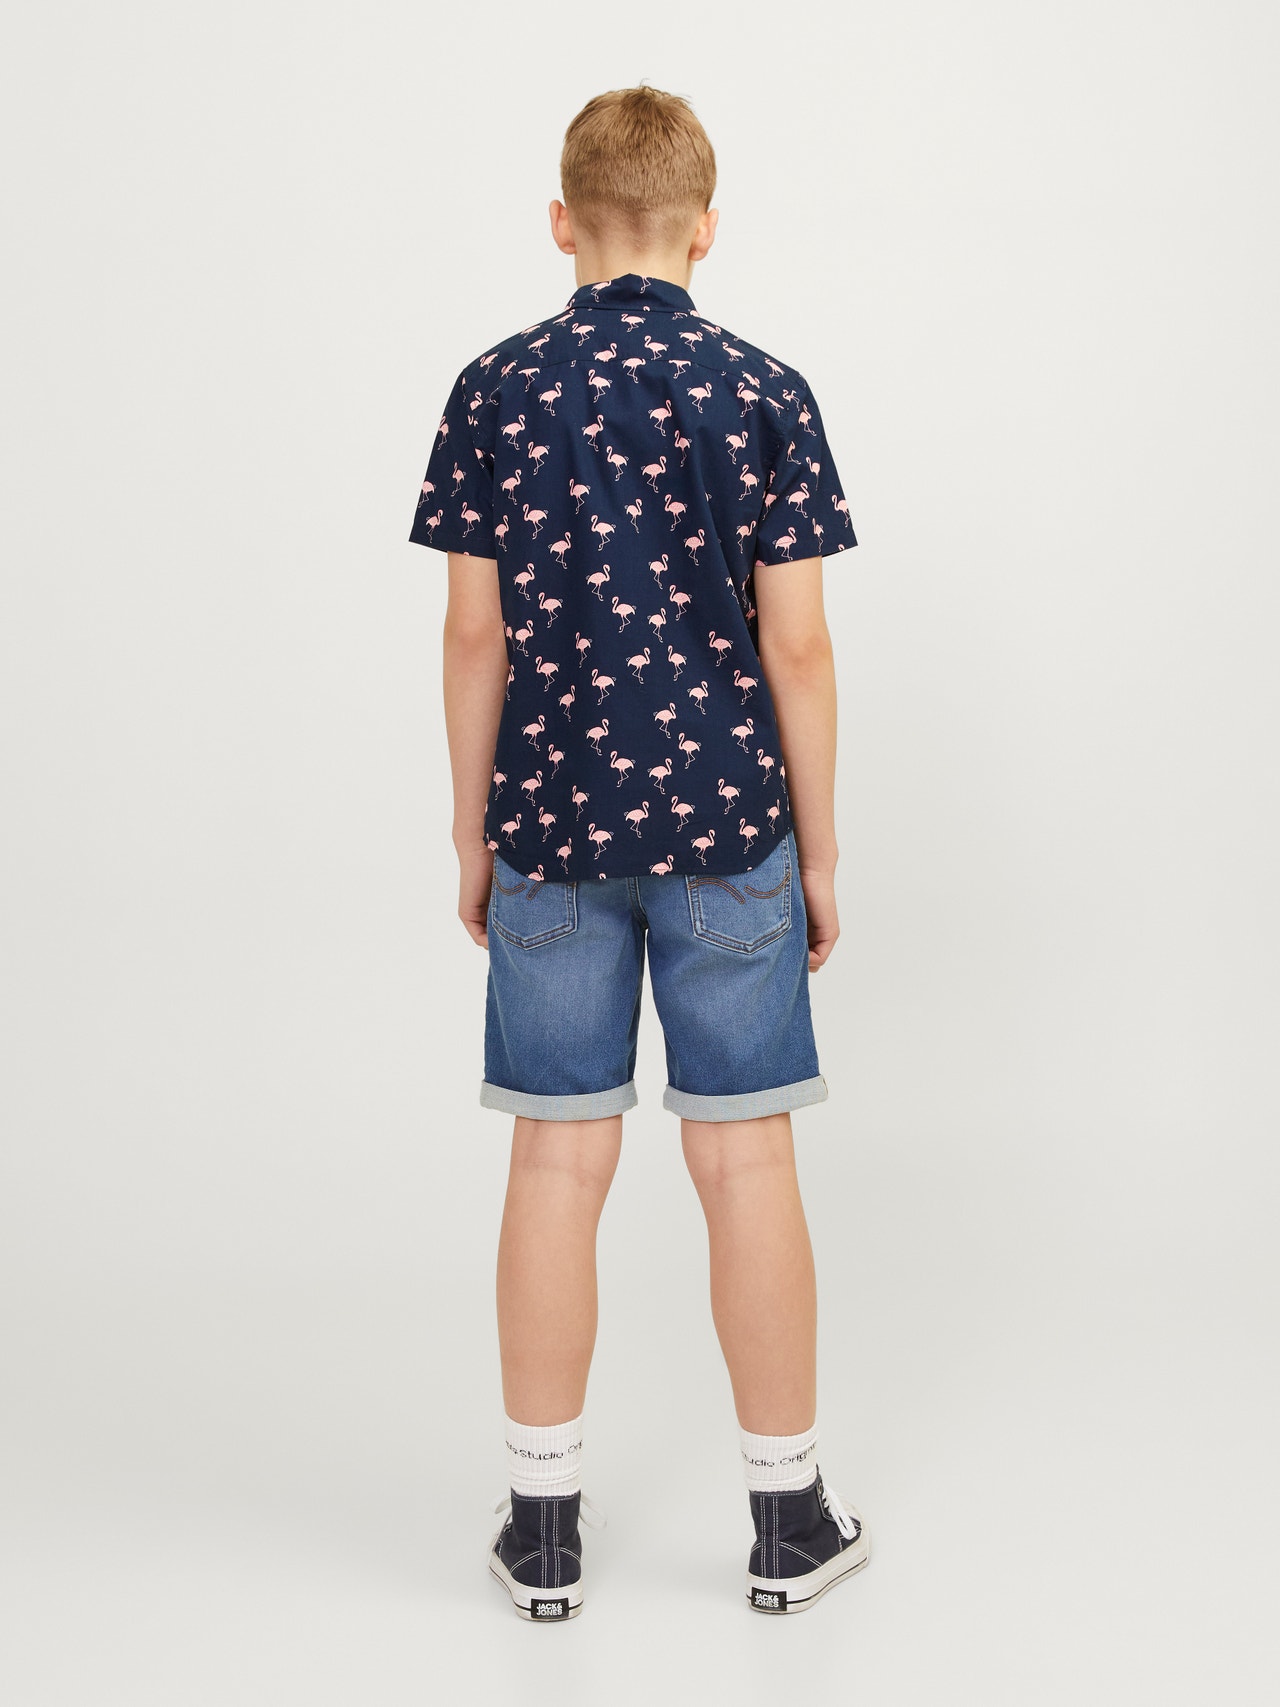 Jack & Jones Overhemd Voor jongens -Navy Blazer - 12249227